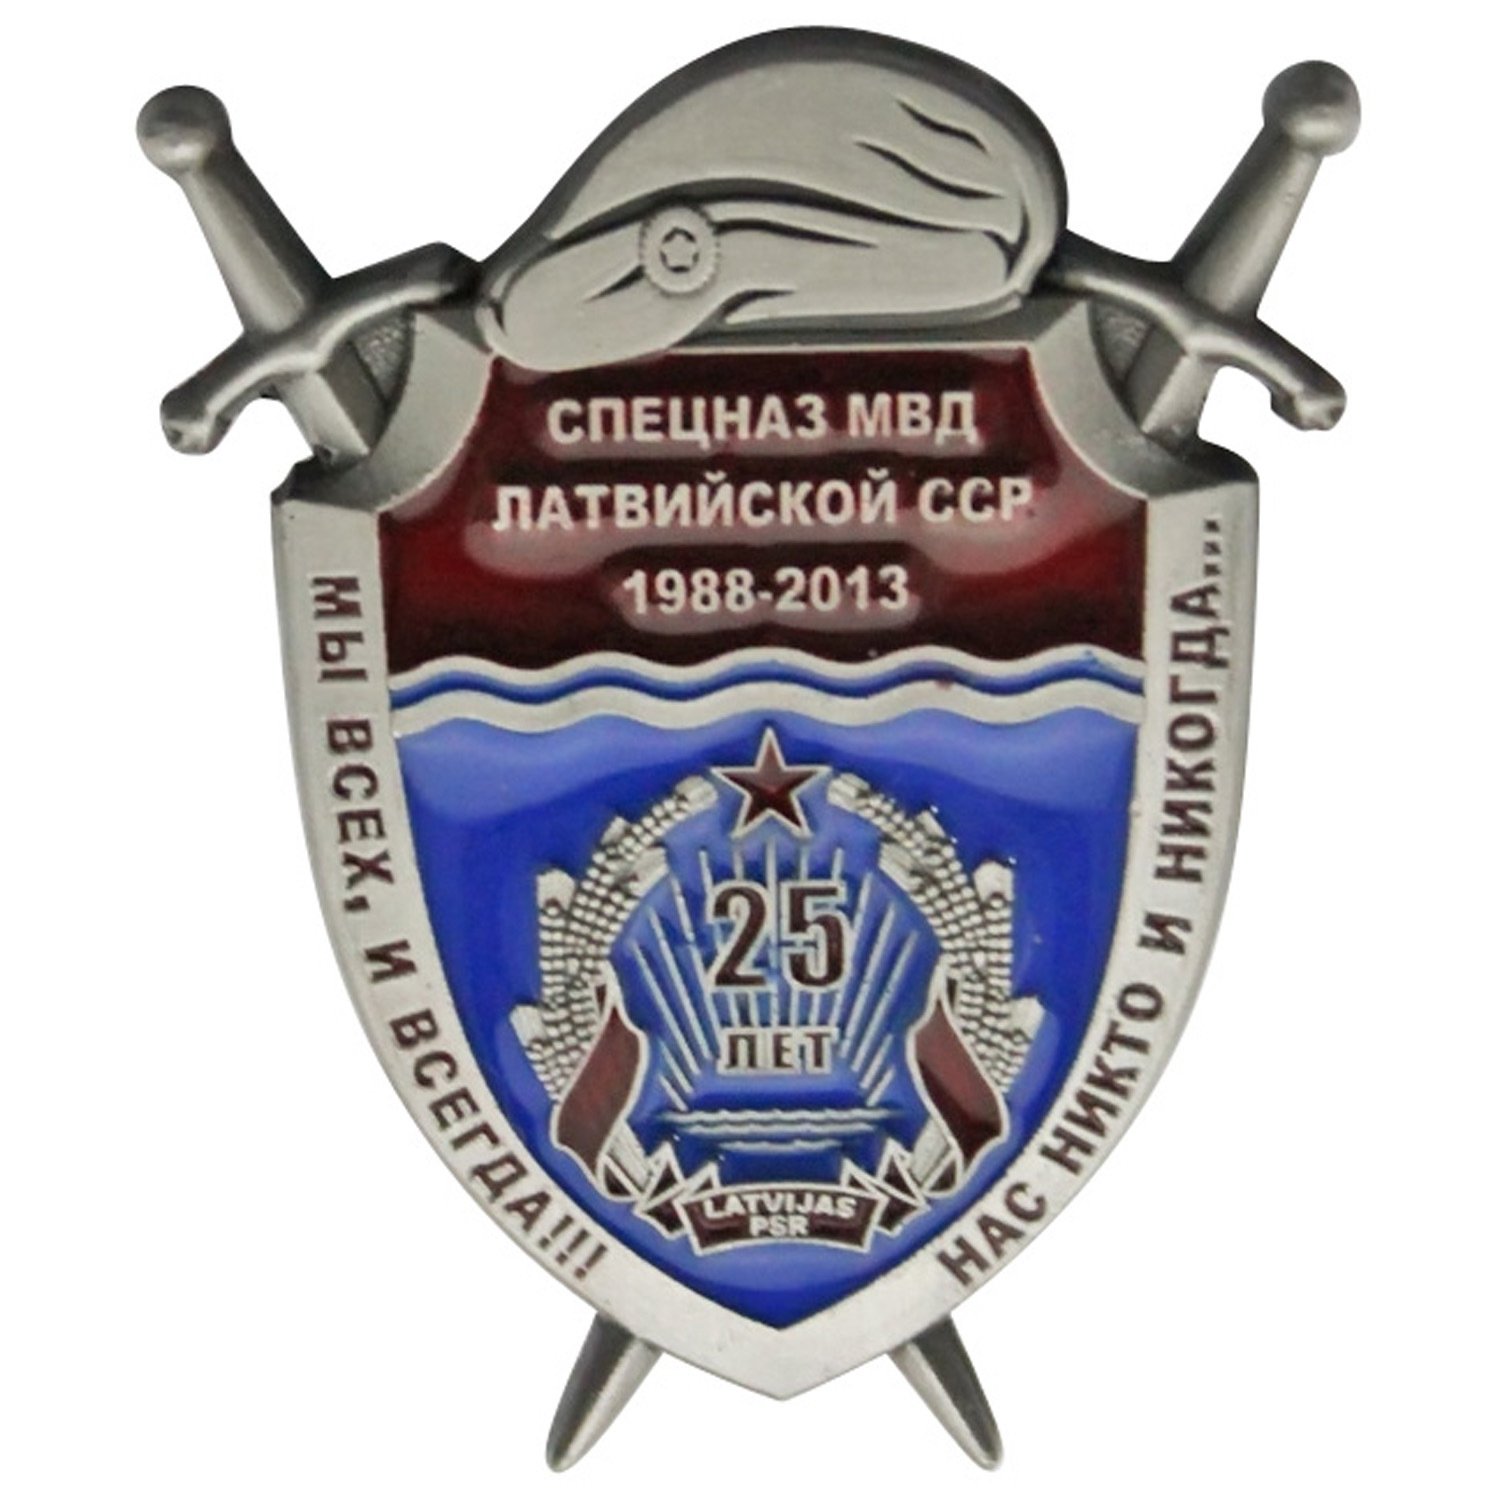 Russia Metal Badge